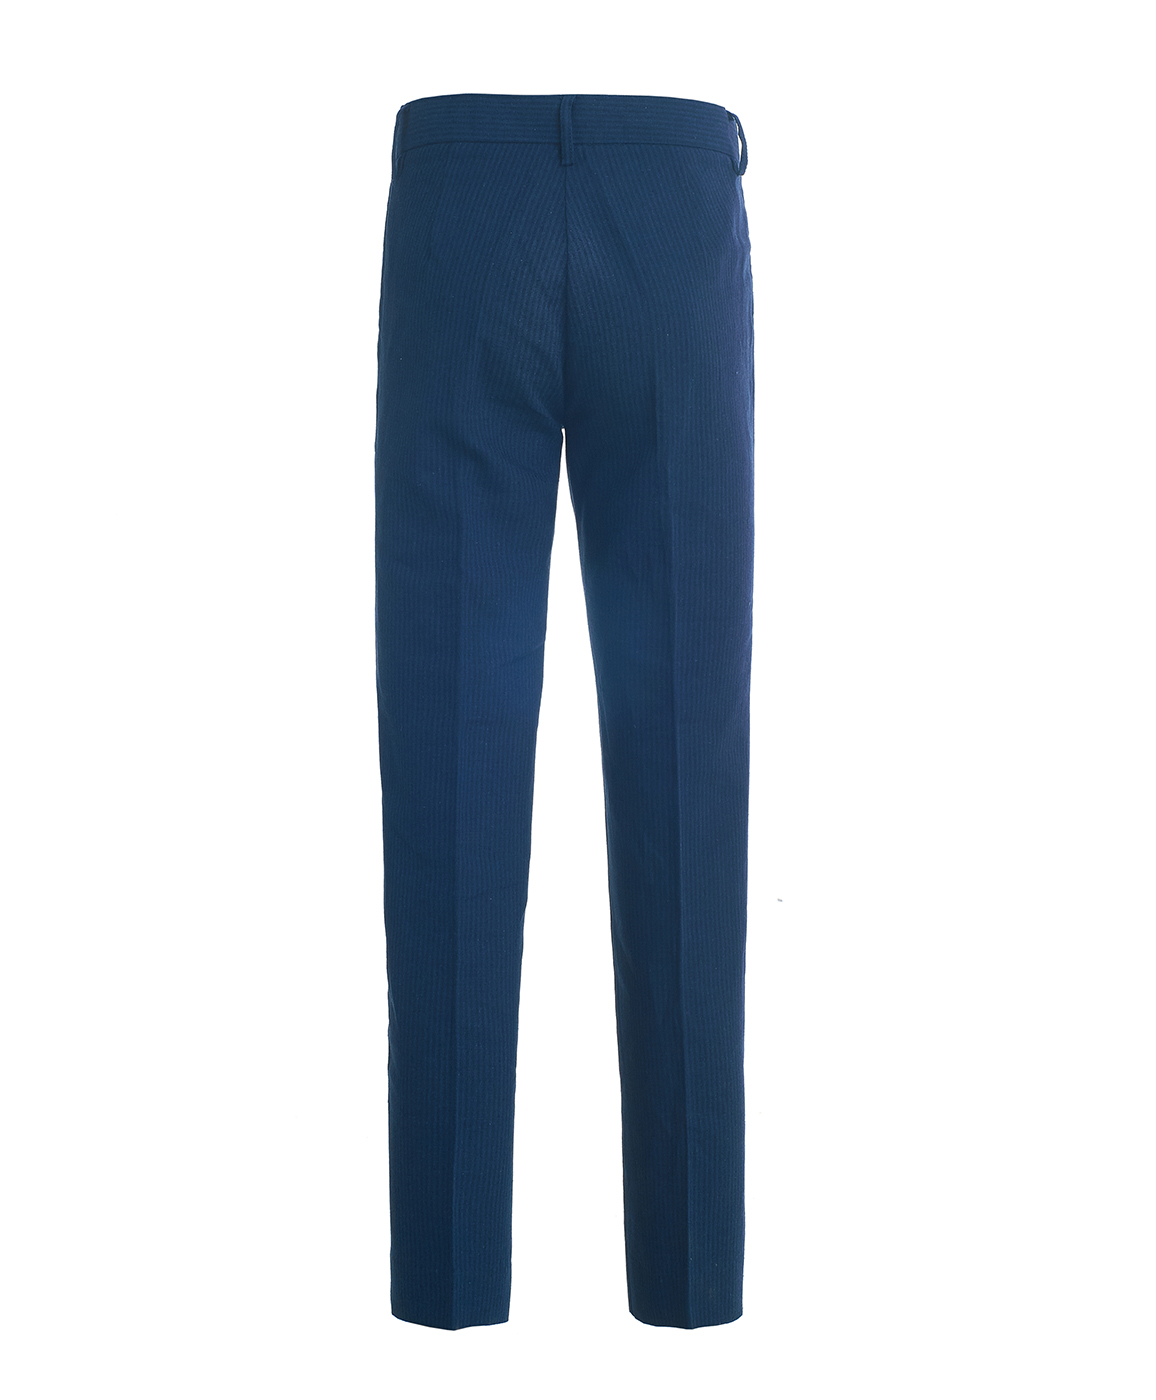 Синие брюки в полоску Button Blue 119BBBP63021005, размер 146, цвет синий - фото 3